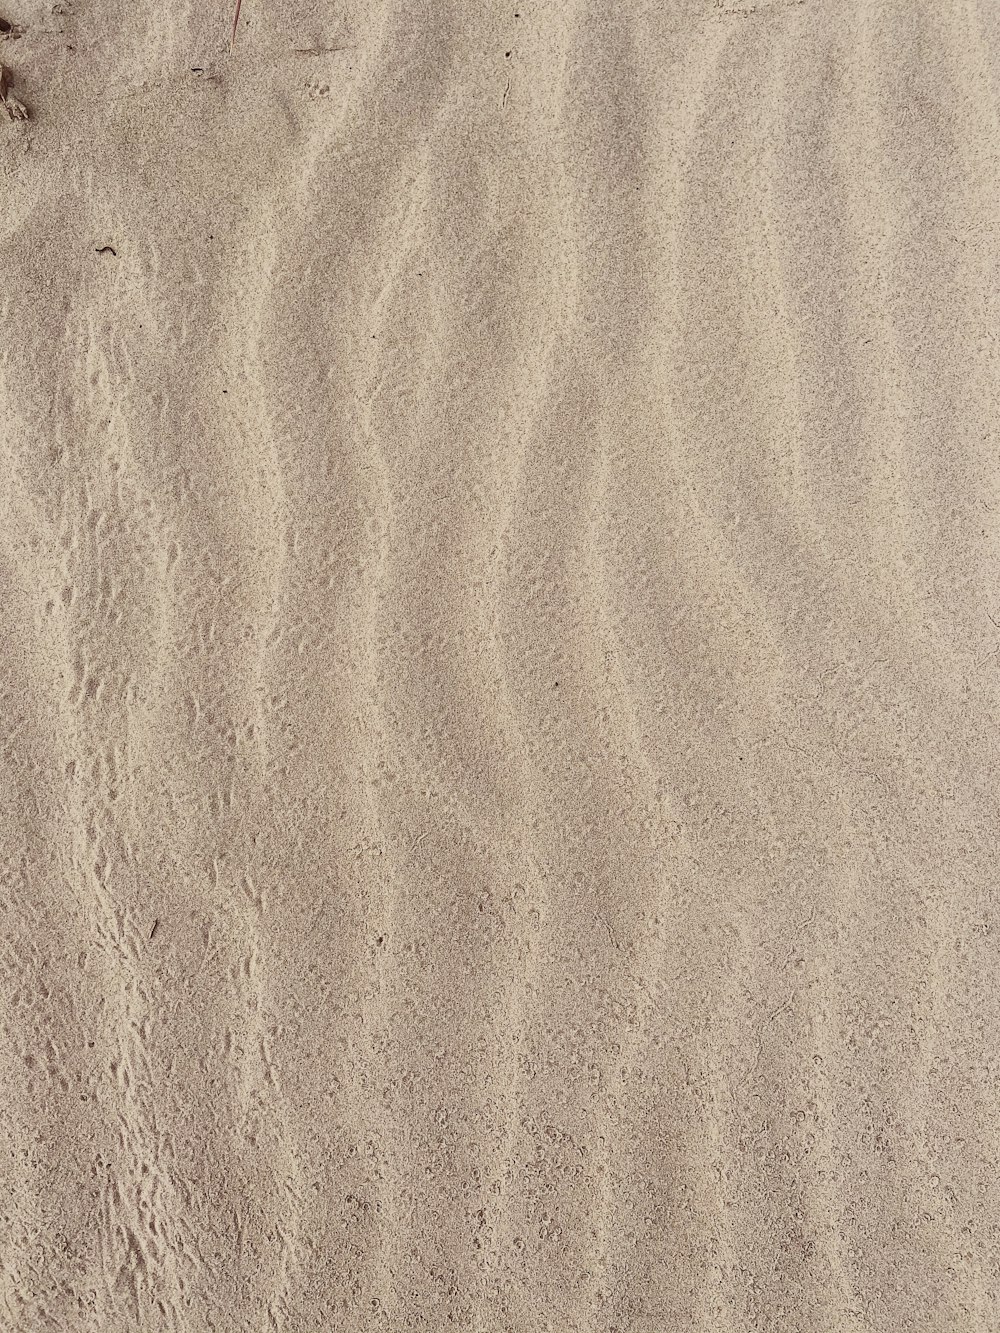 brauner Sand mit Schatten der Person